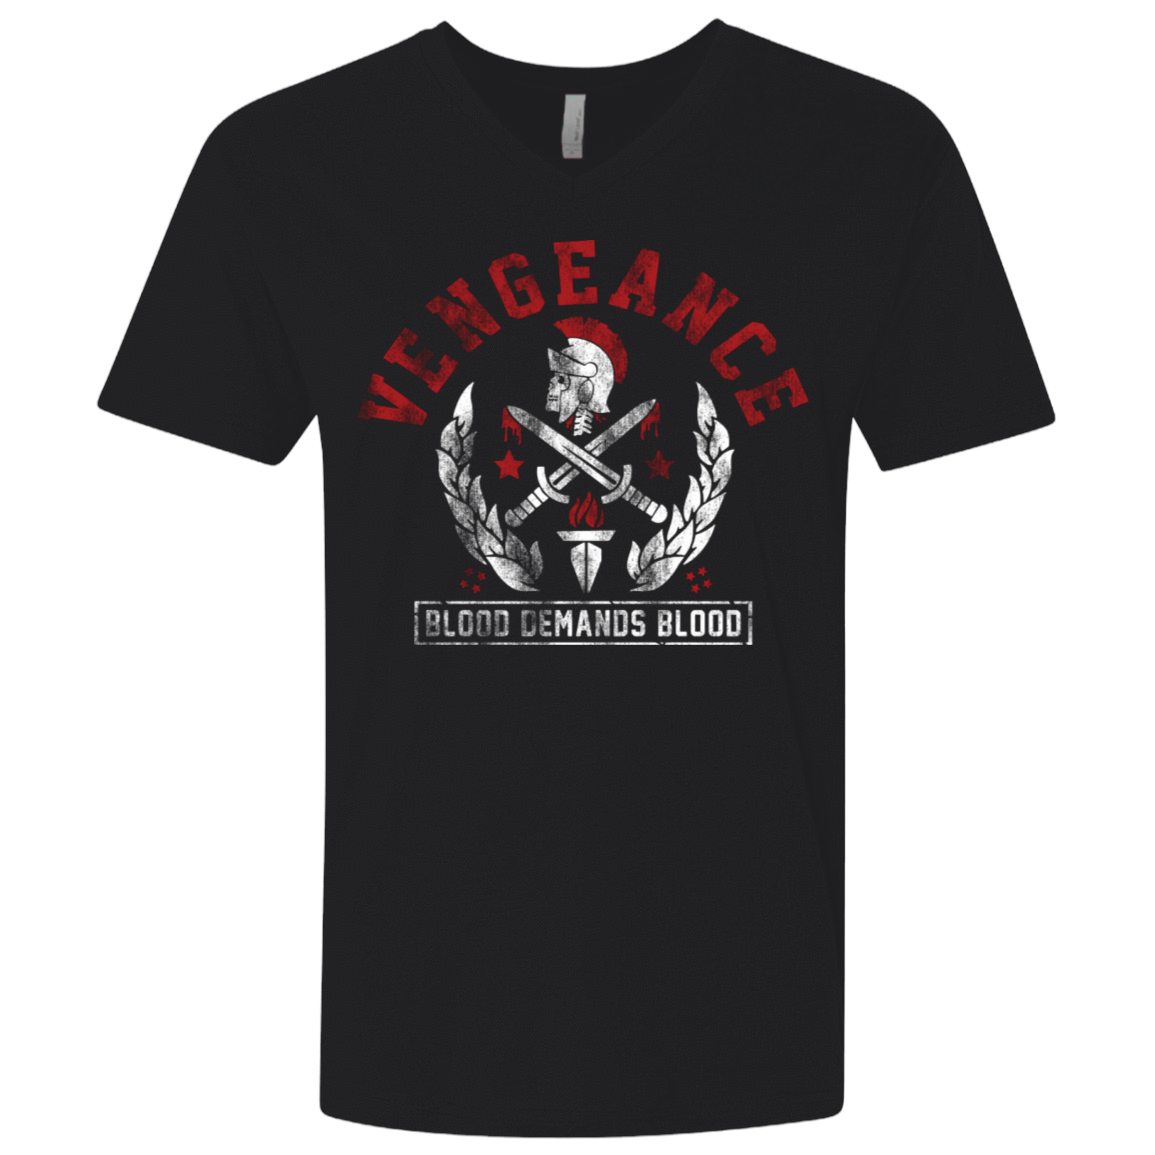 T-Shirts Black / X-Small Vengeance Men's Premium V-Neck